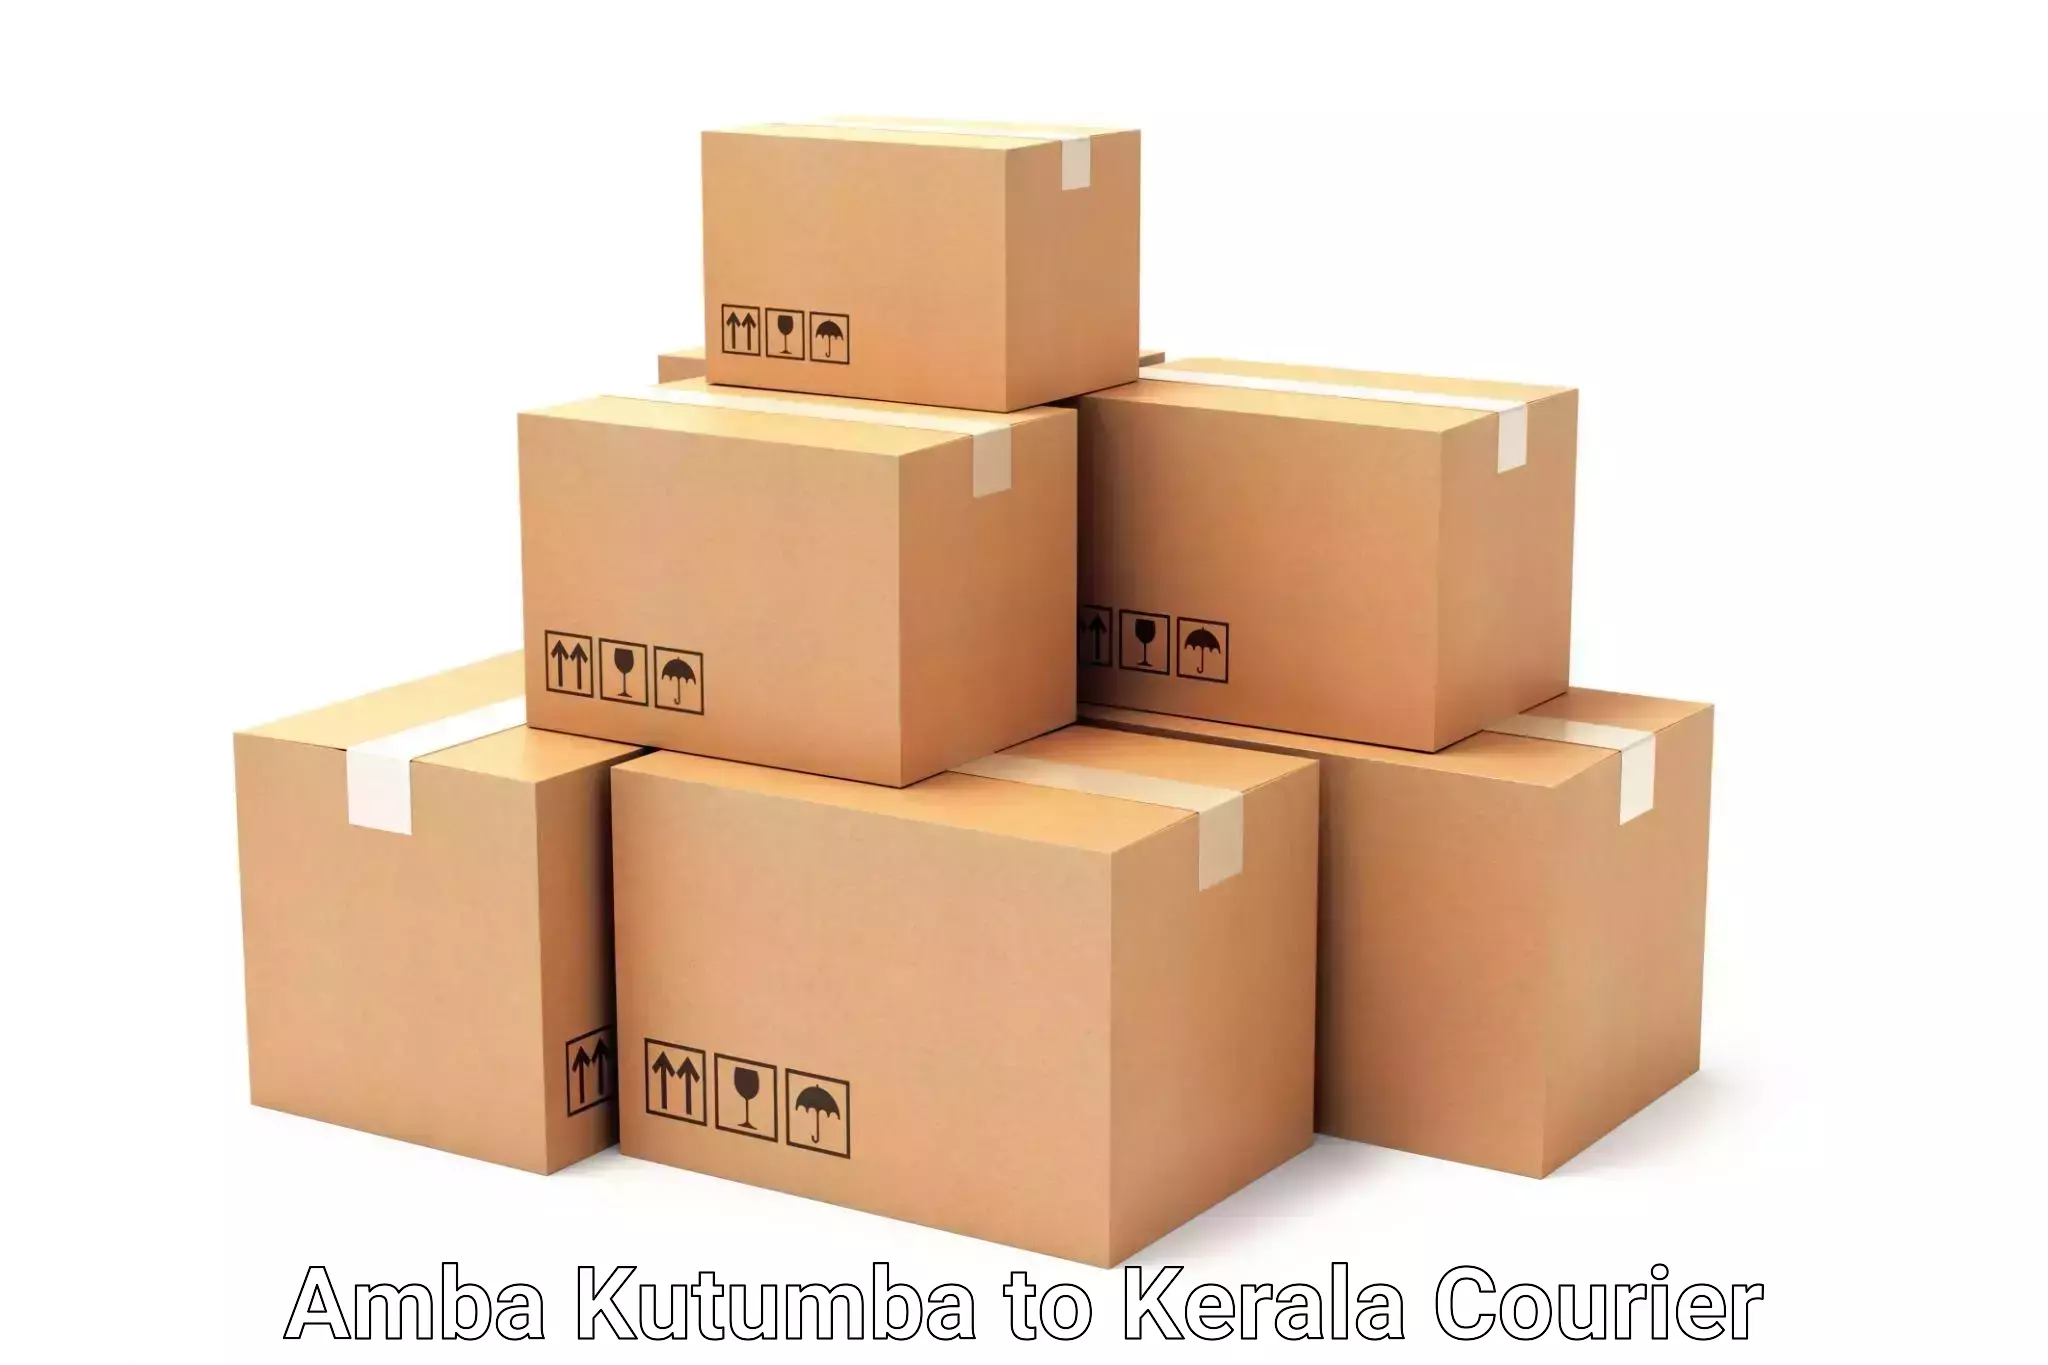 Luggage shipping rates Amba Kutumba to Cochin Port Kochi